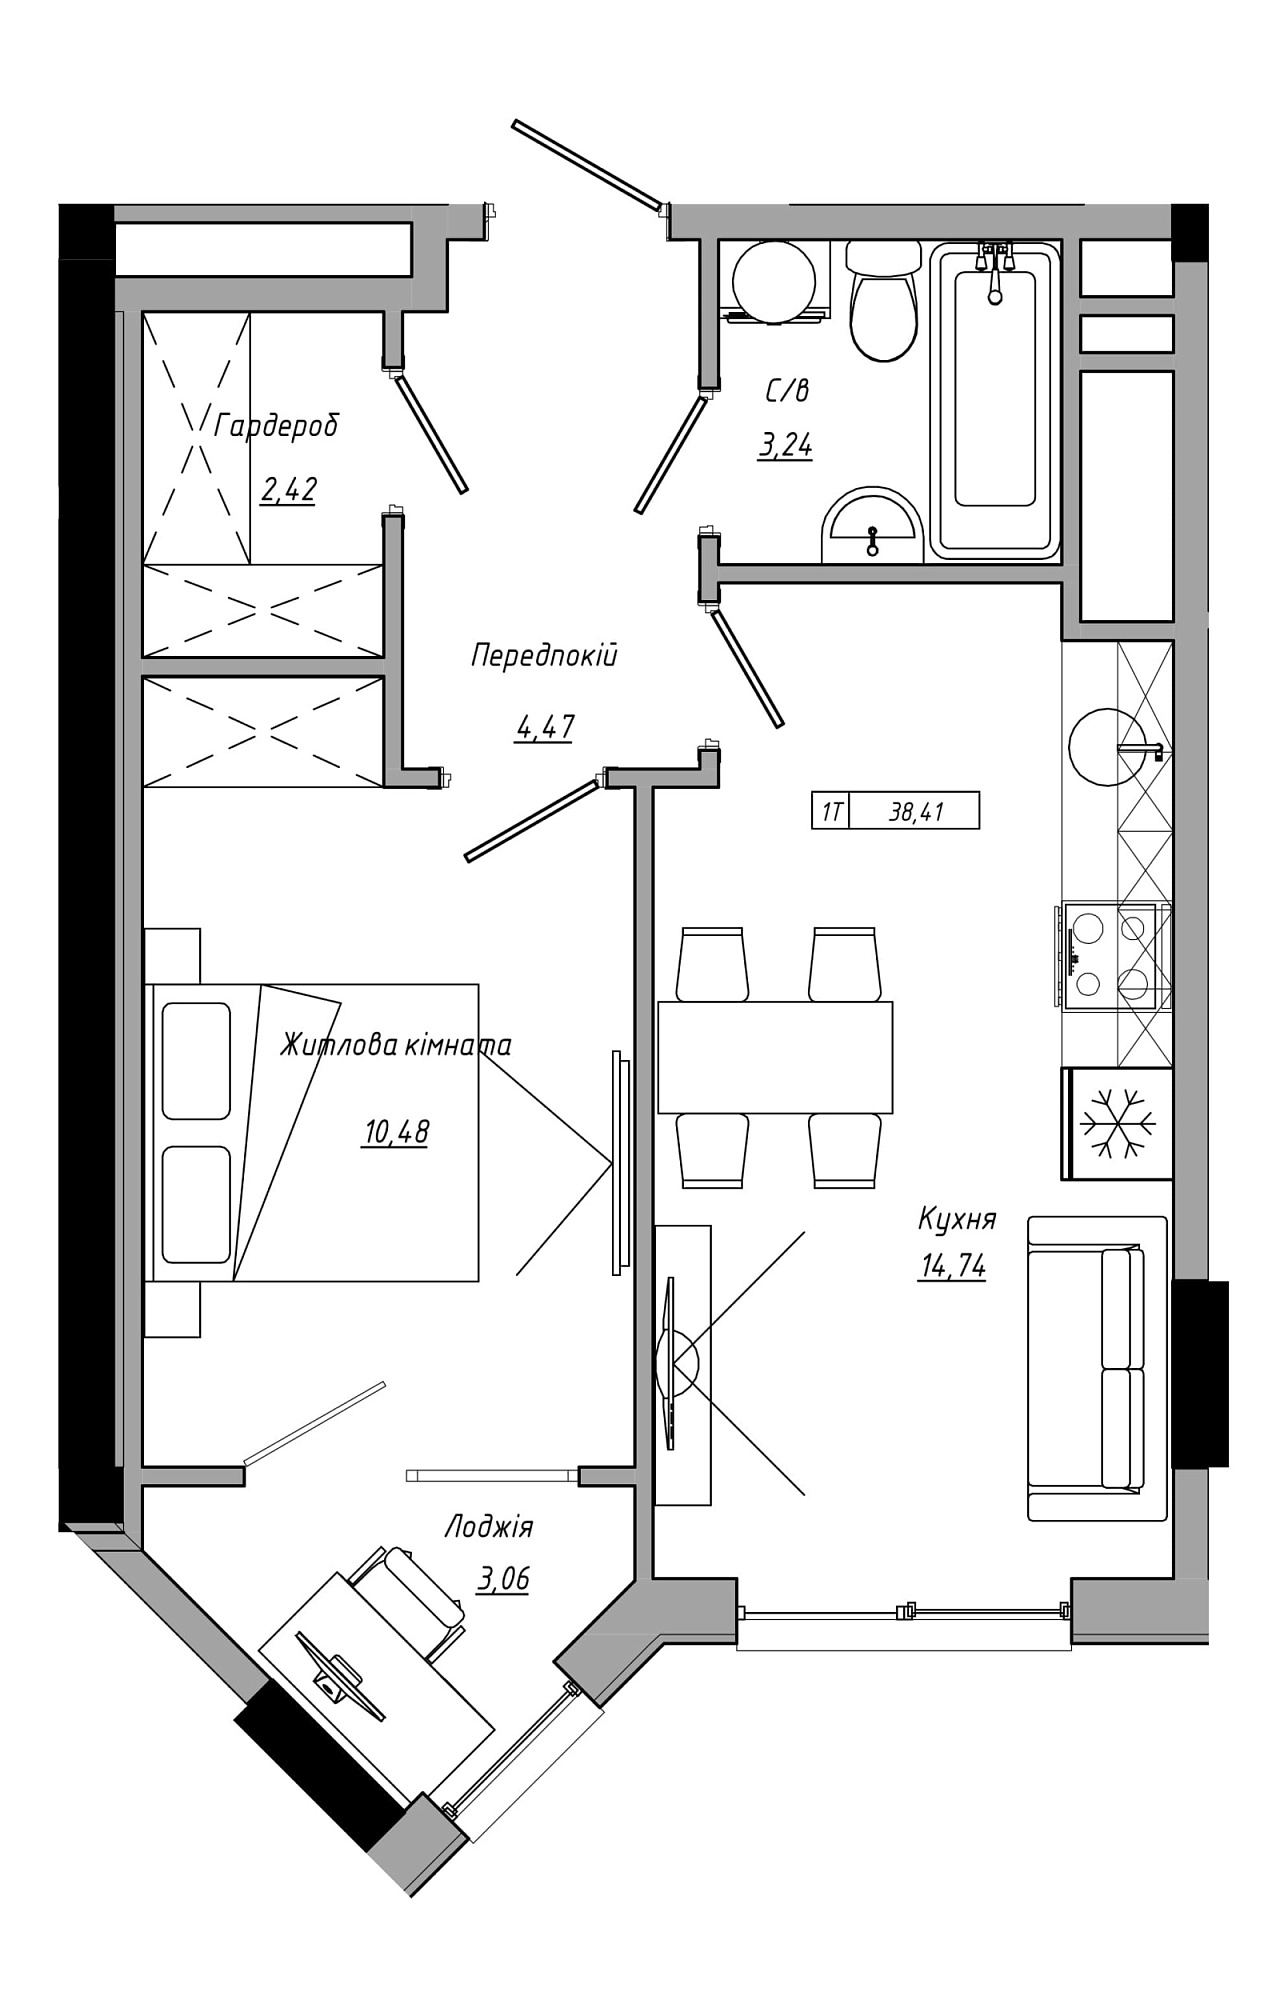 Планування 1-к квартира площею 38.41м2, AB-21-09/00022.